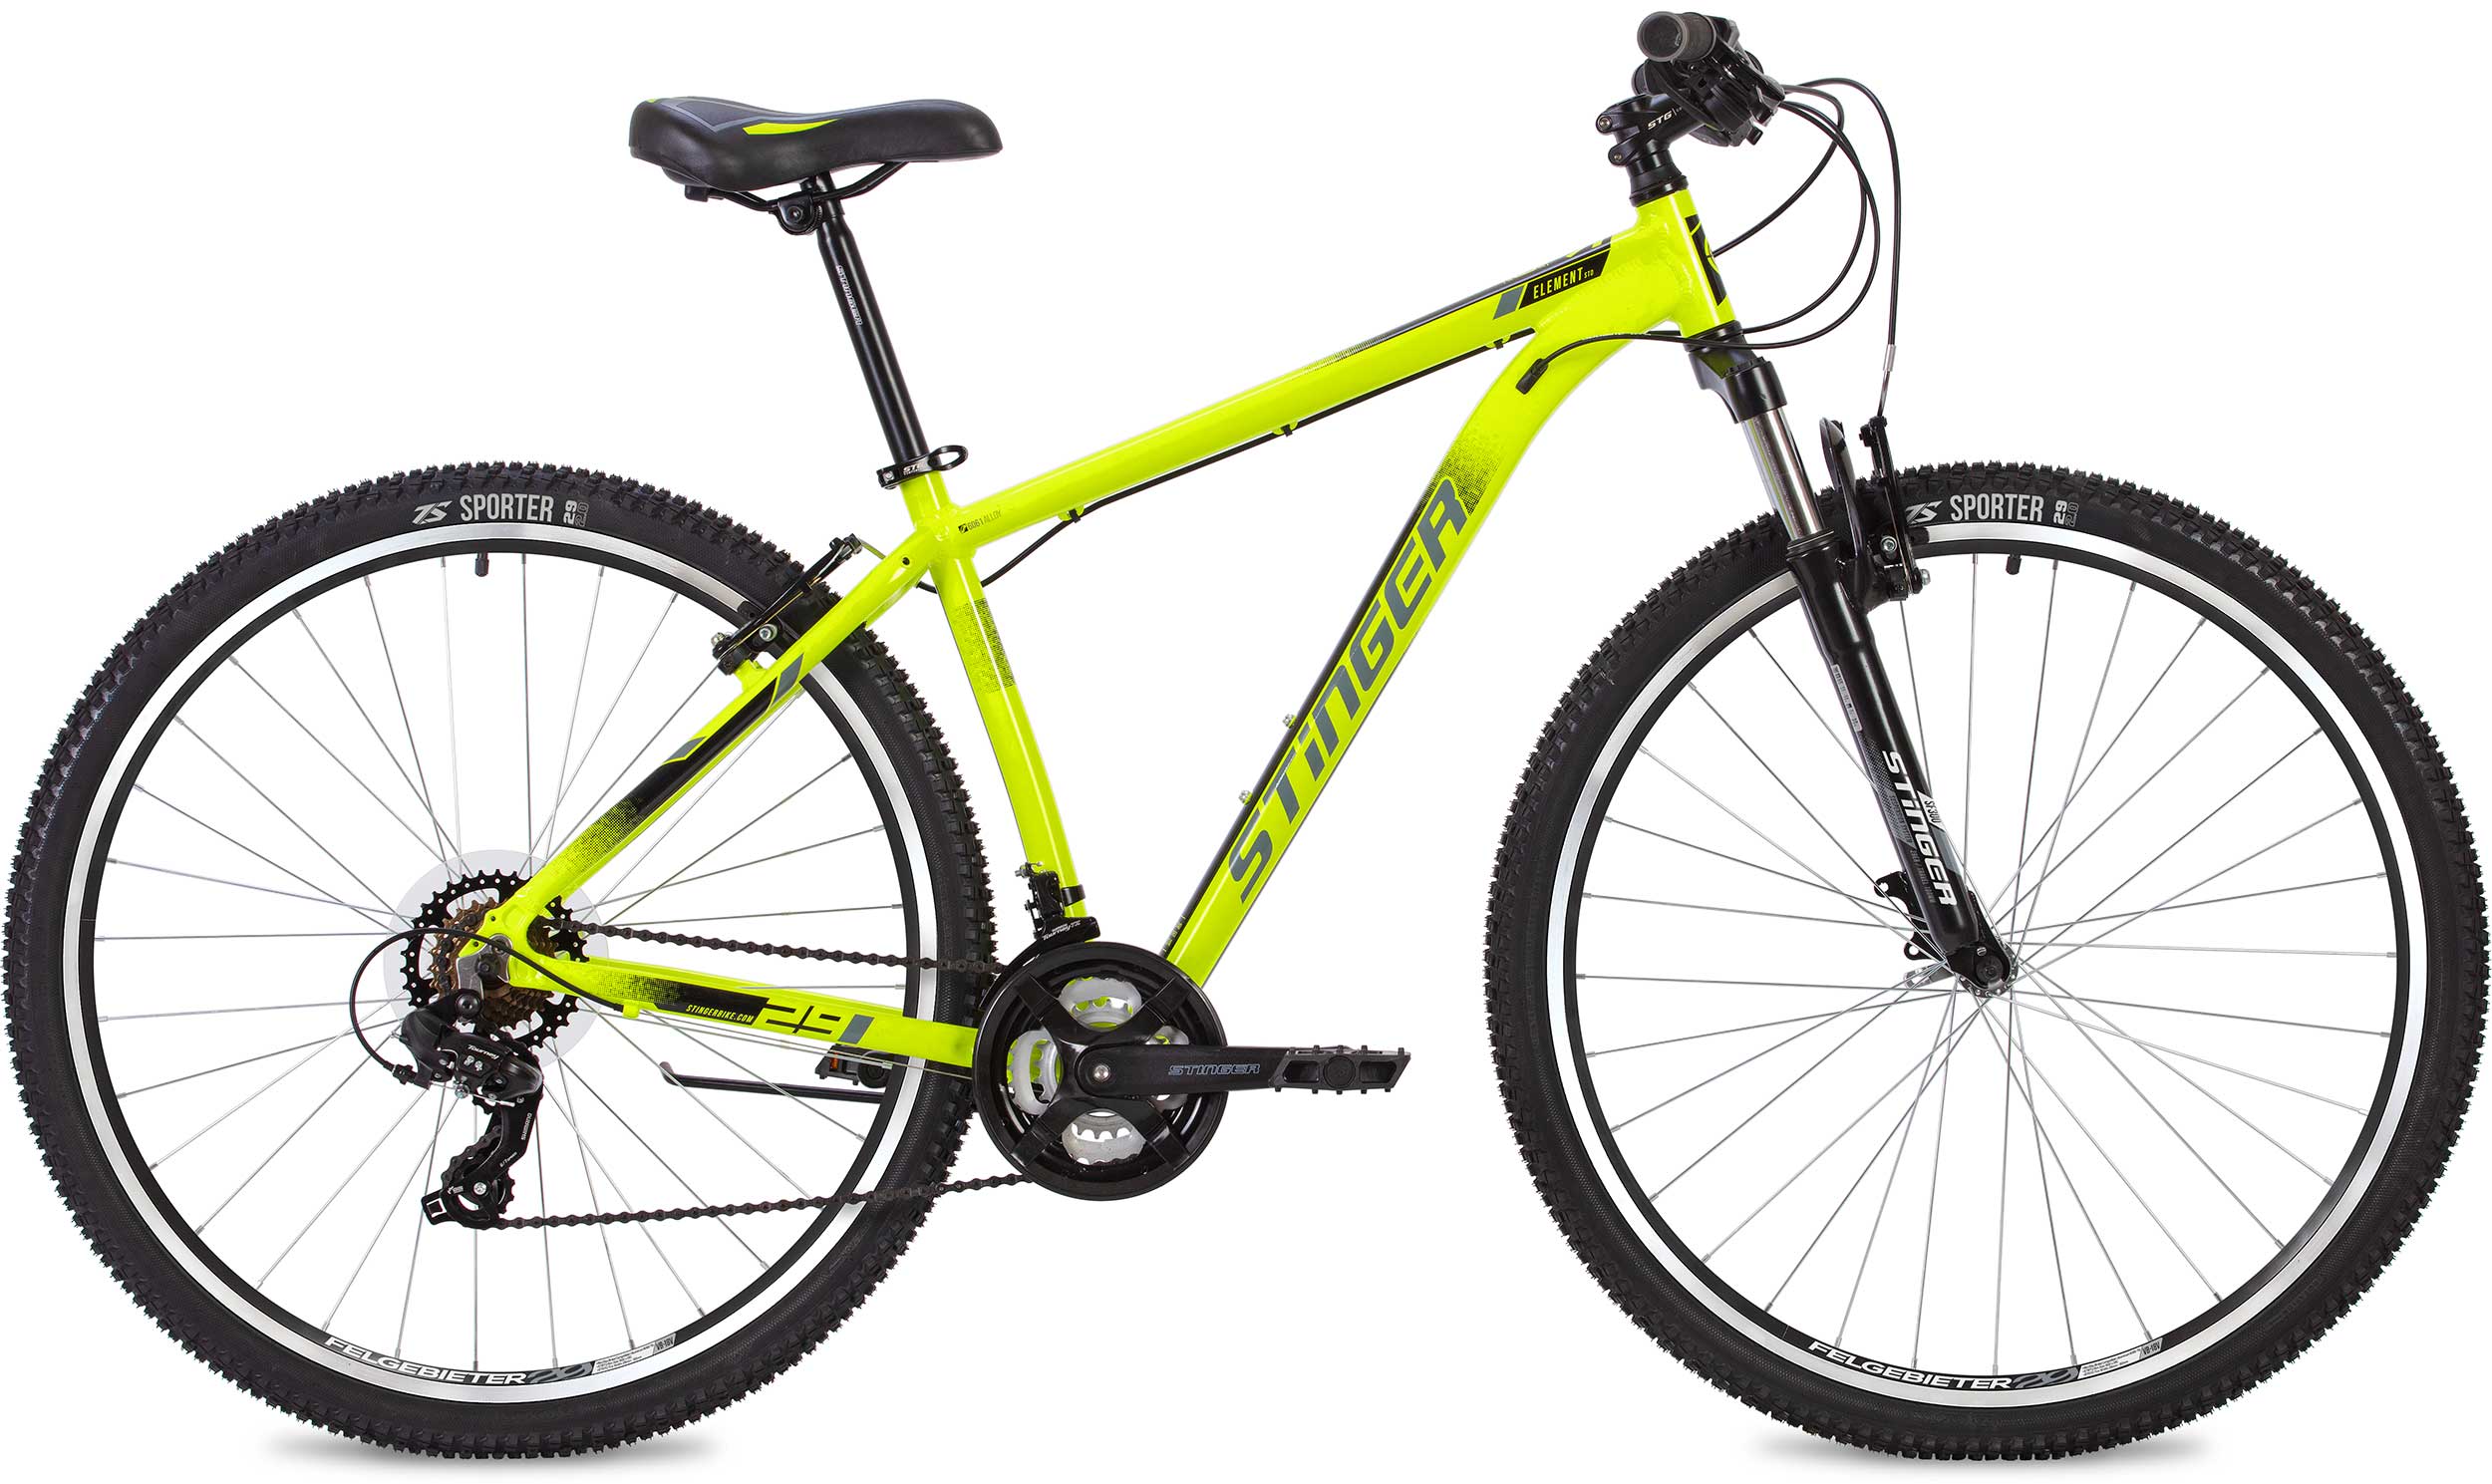  Отзывы о Горном велосипеде Stinger Element STD 29 2020